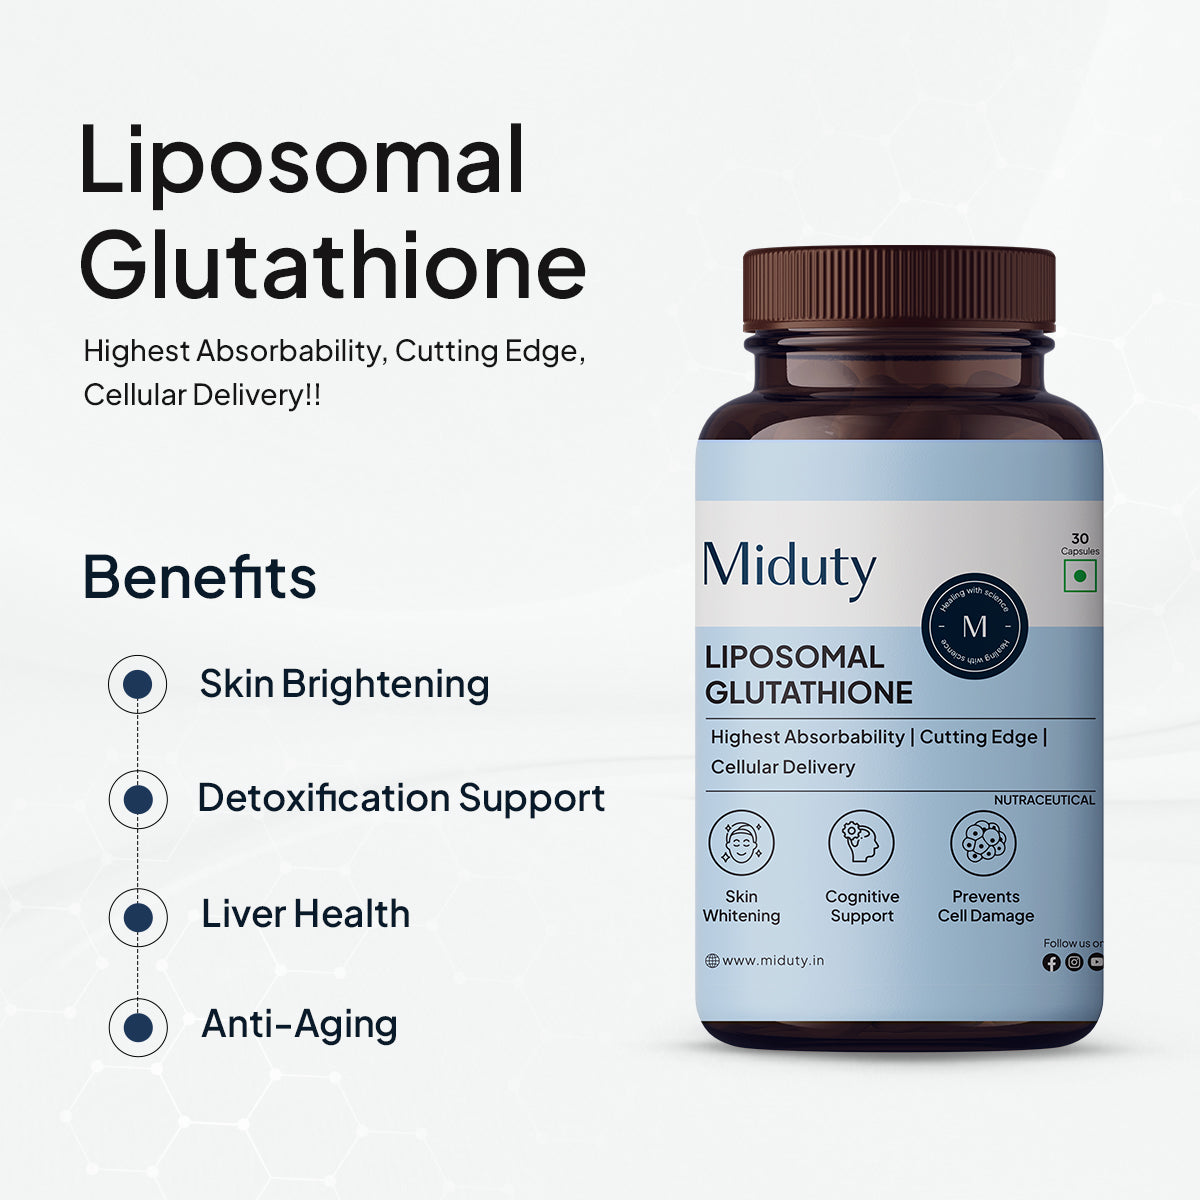 LIPOSOMAL GLUTATHIONE - Miduty